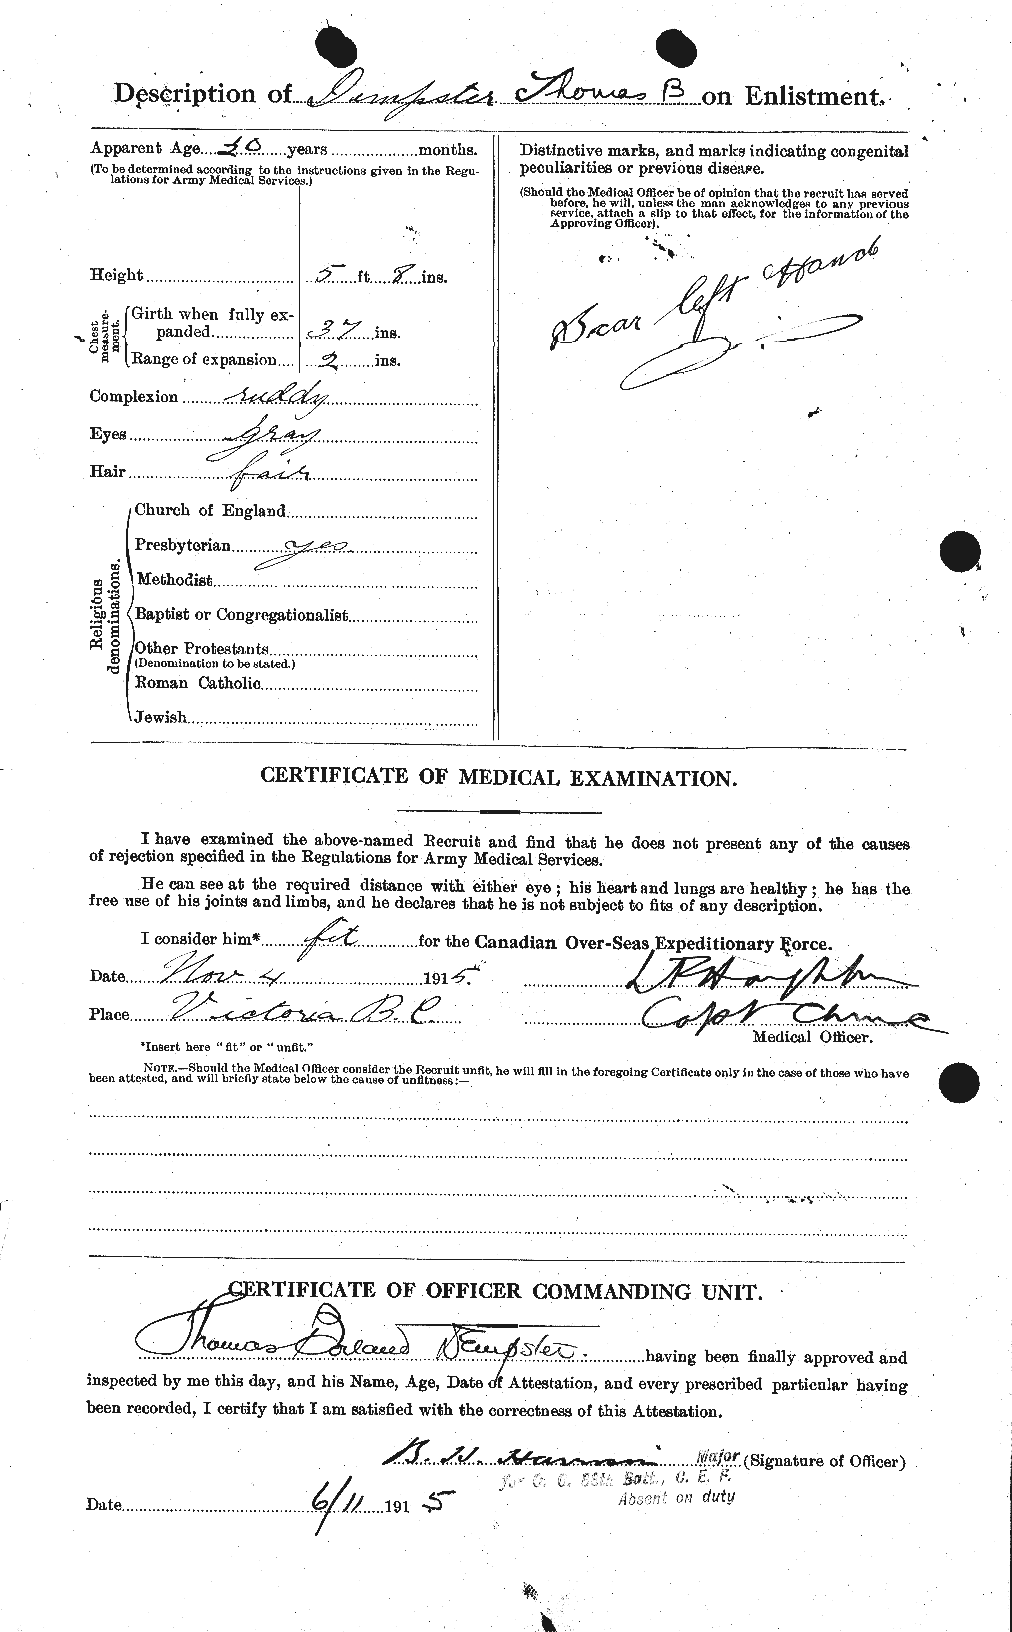 Dossiers du Personnel de la Première Guerre mondiale - CEC 286977b